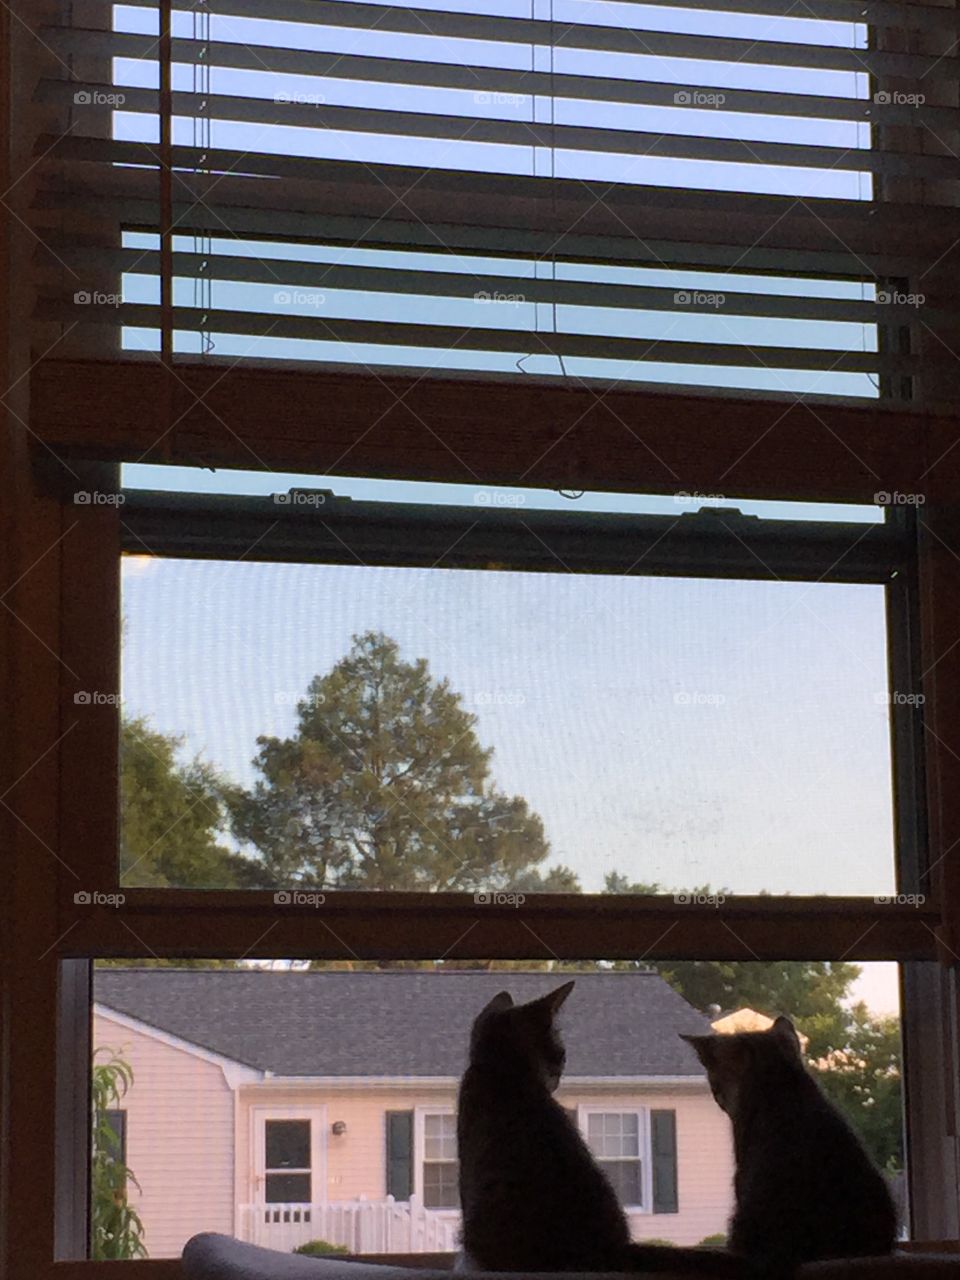 Kittens in the window